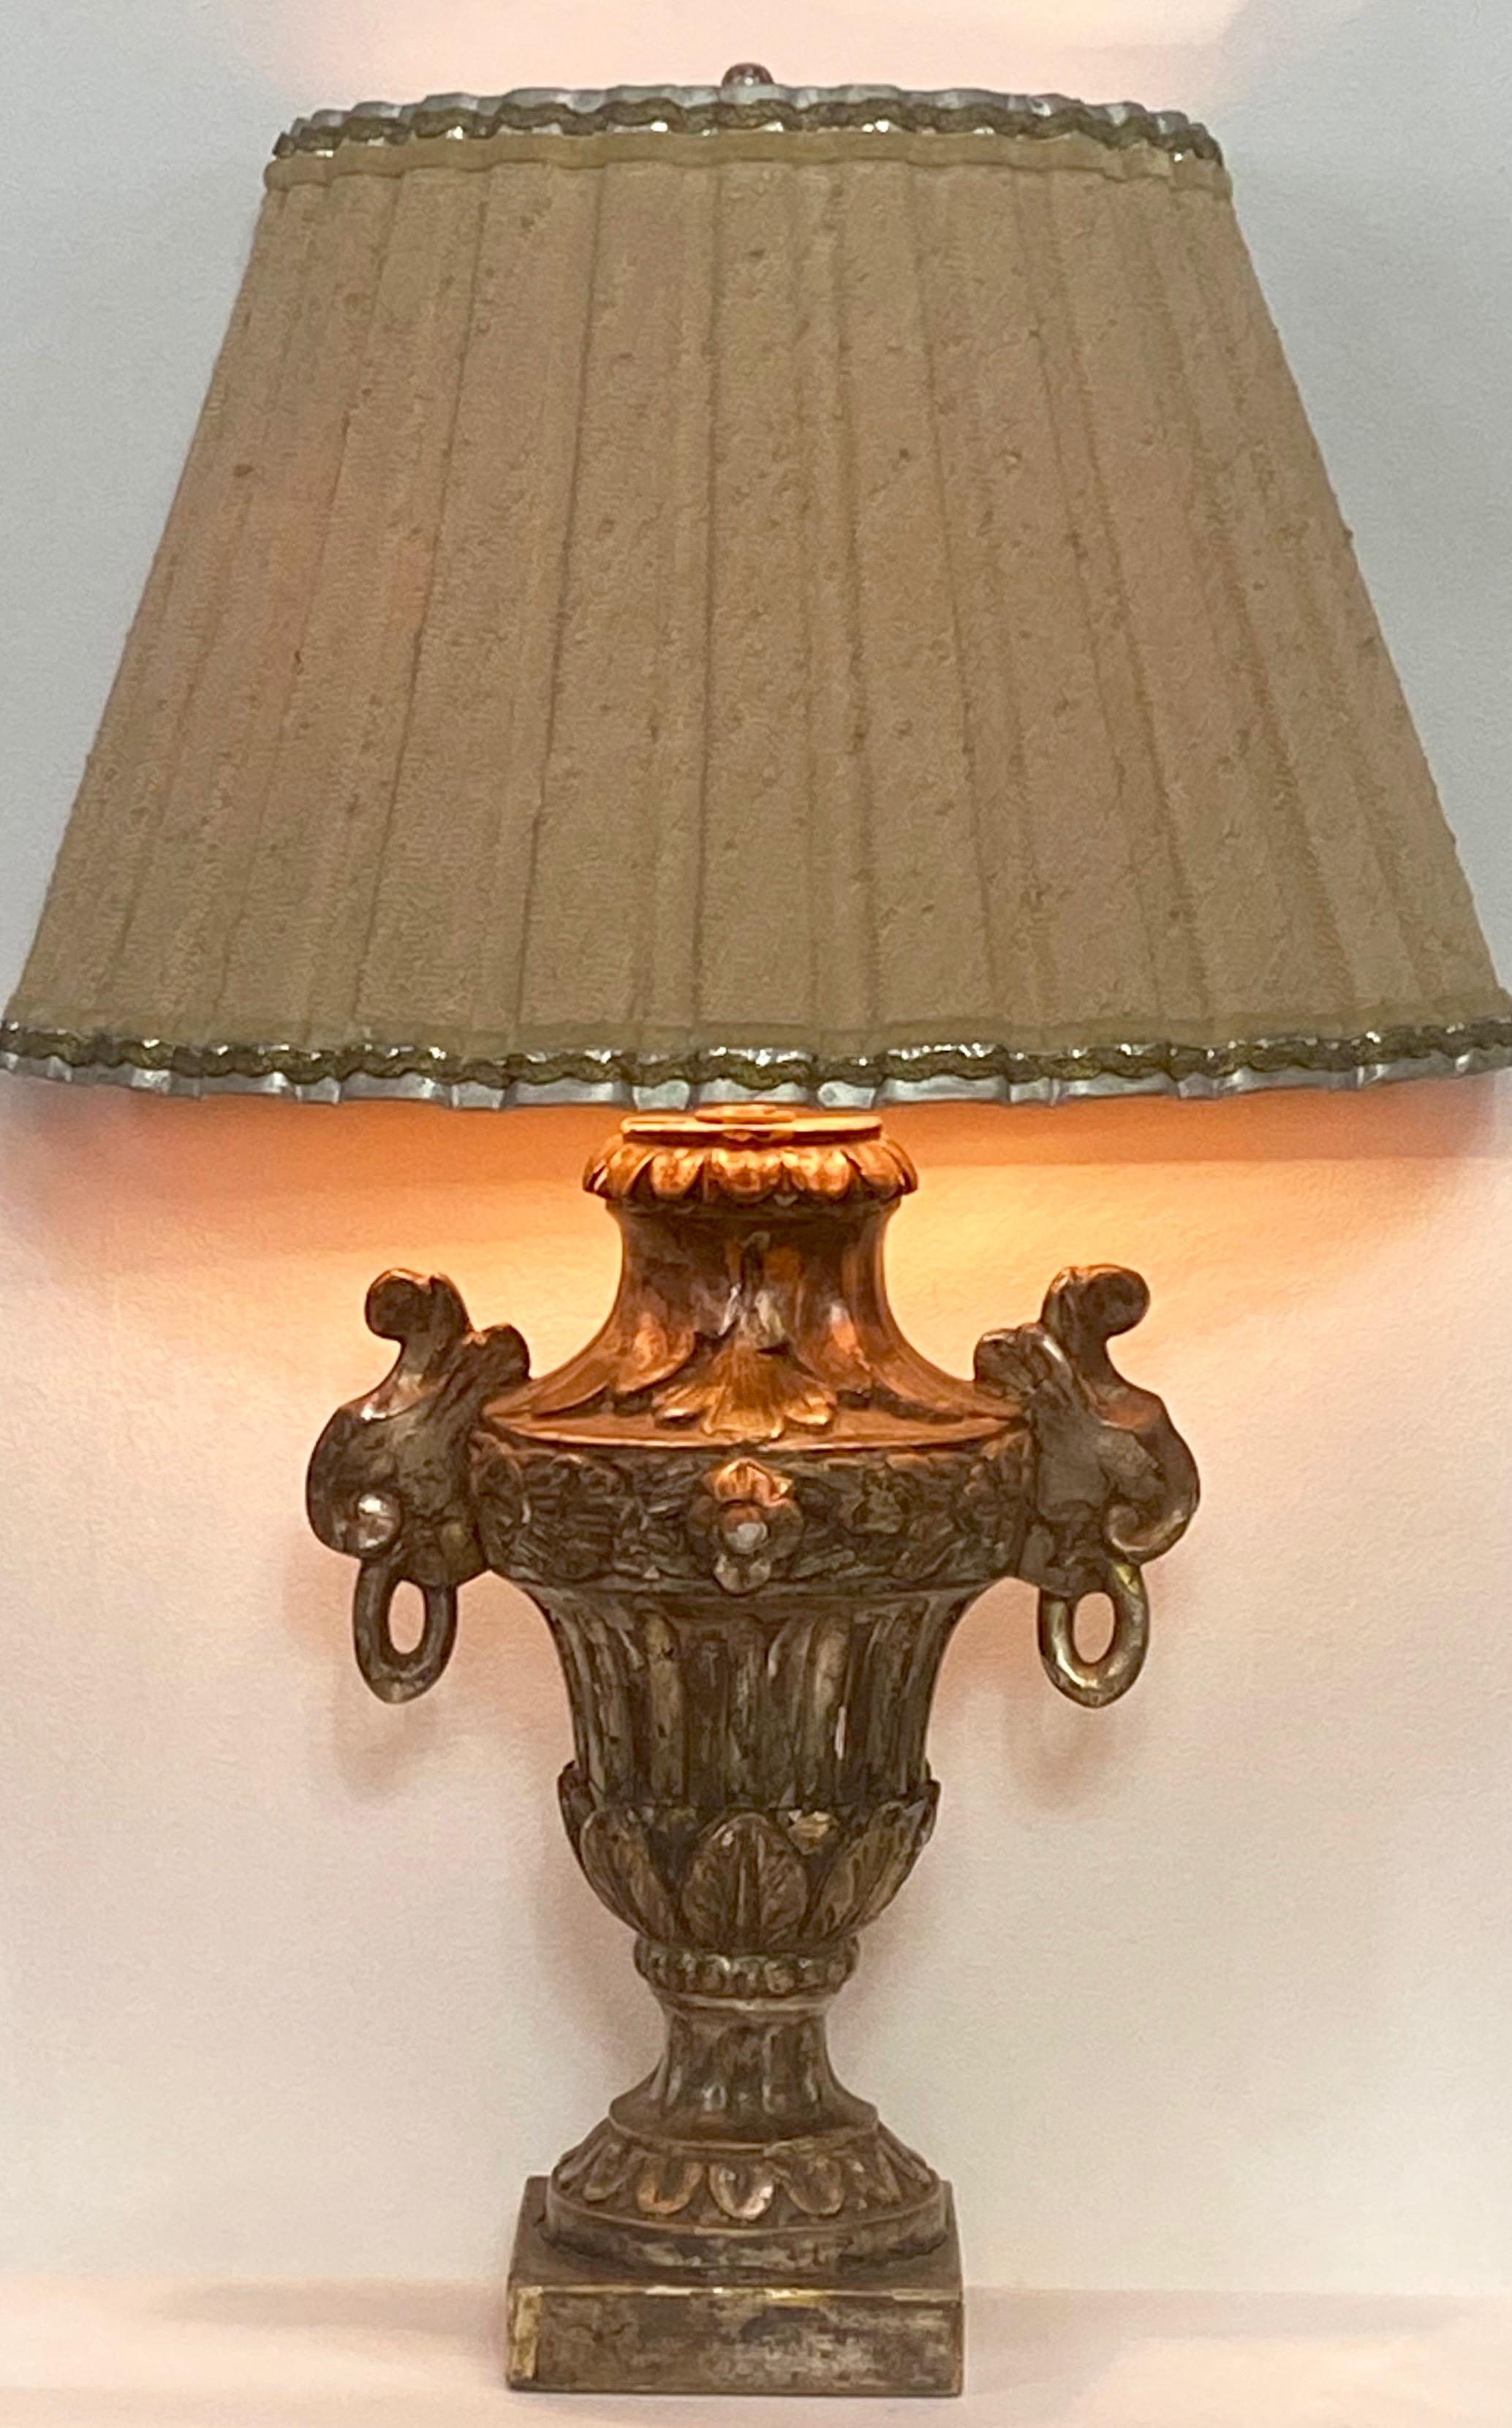 Une demi-urne décorative italienne du 19ème siècle en bois sculpté et argent doré convertie en lampe avec un abat-jour original fait sur mesure.
Nouvellement recâblé.

  